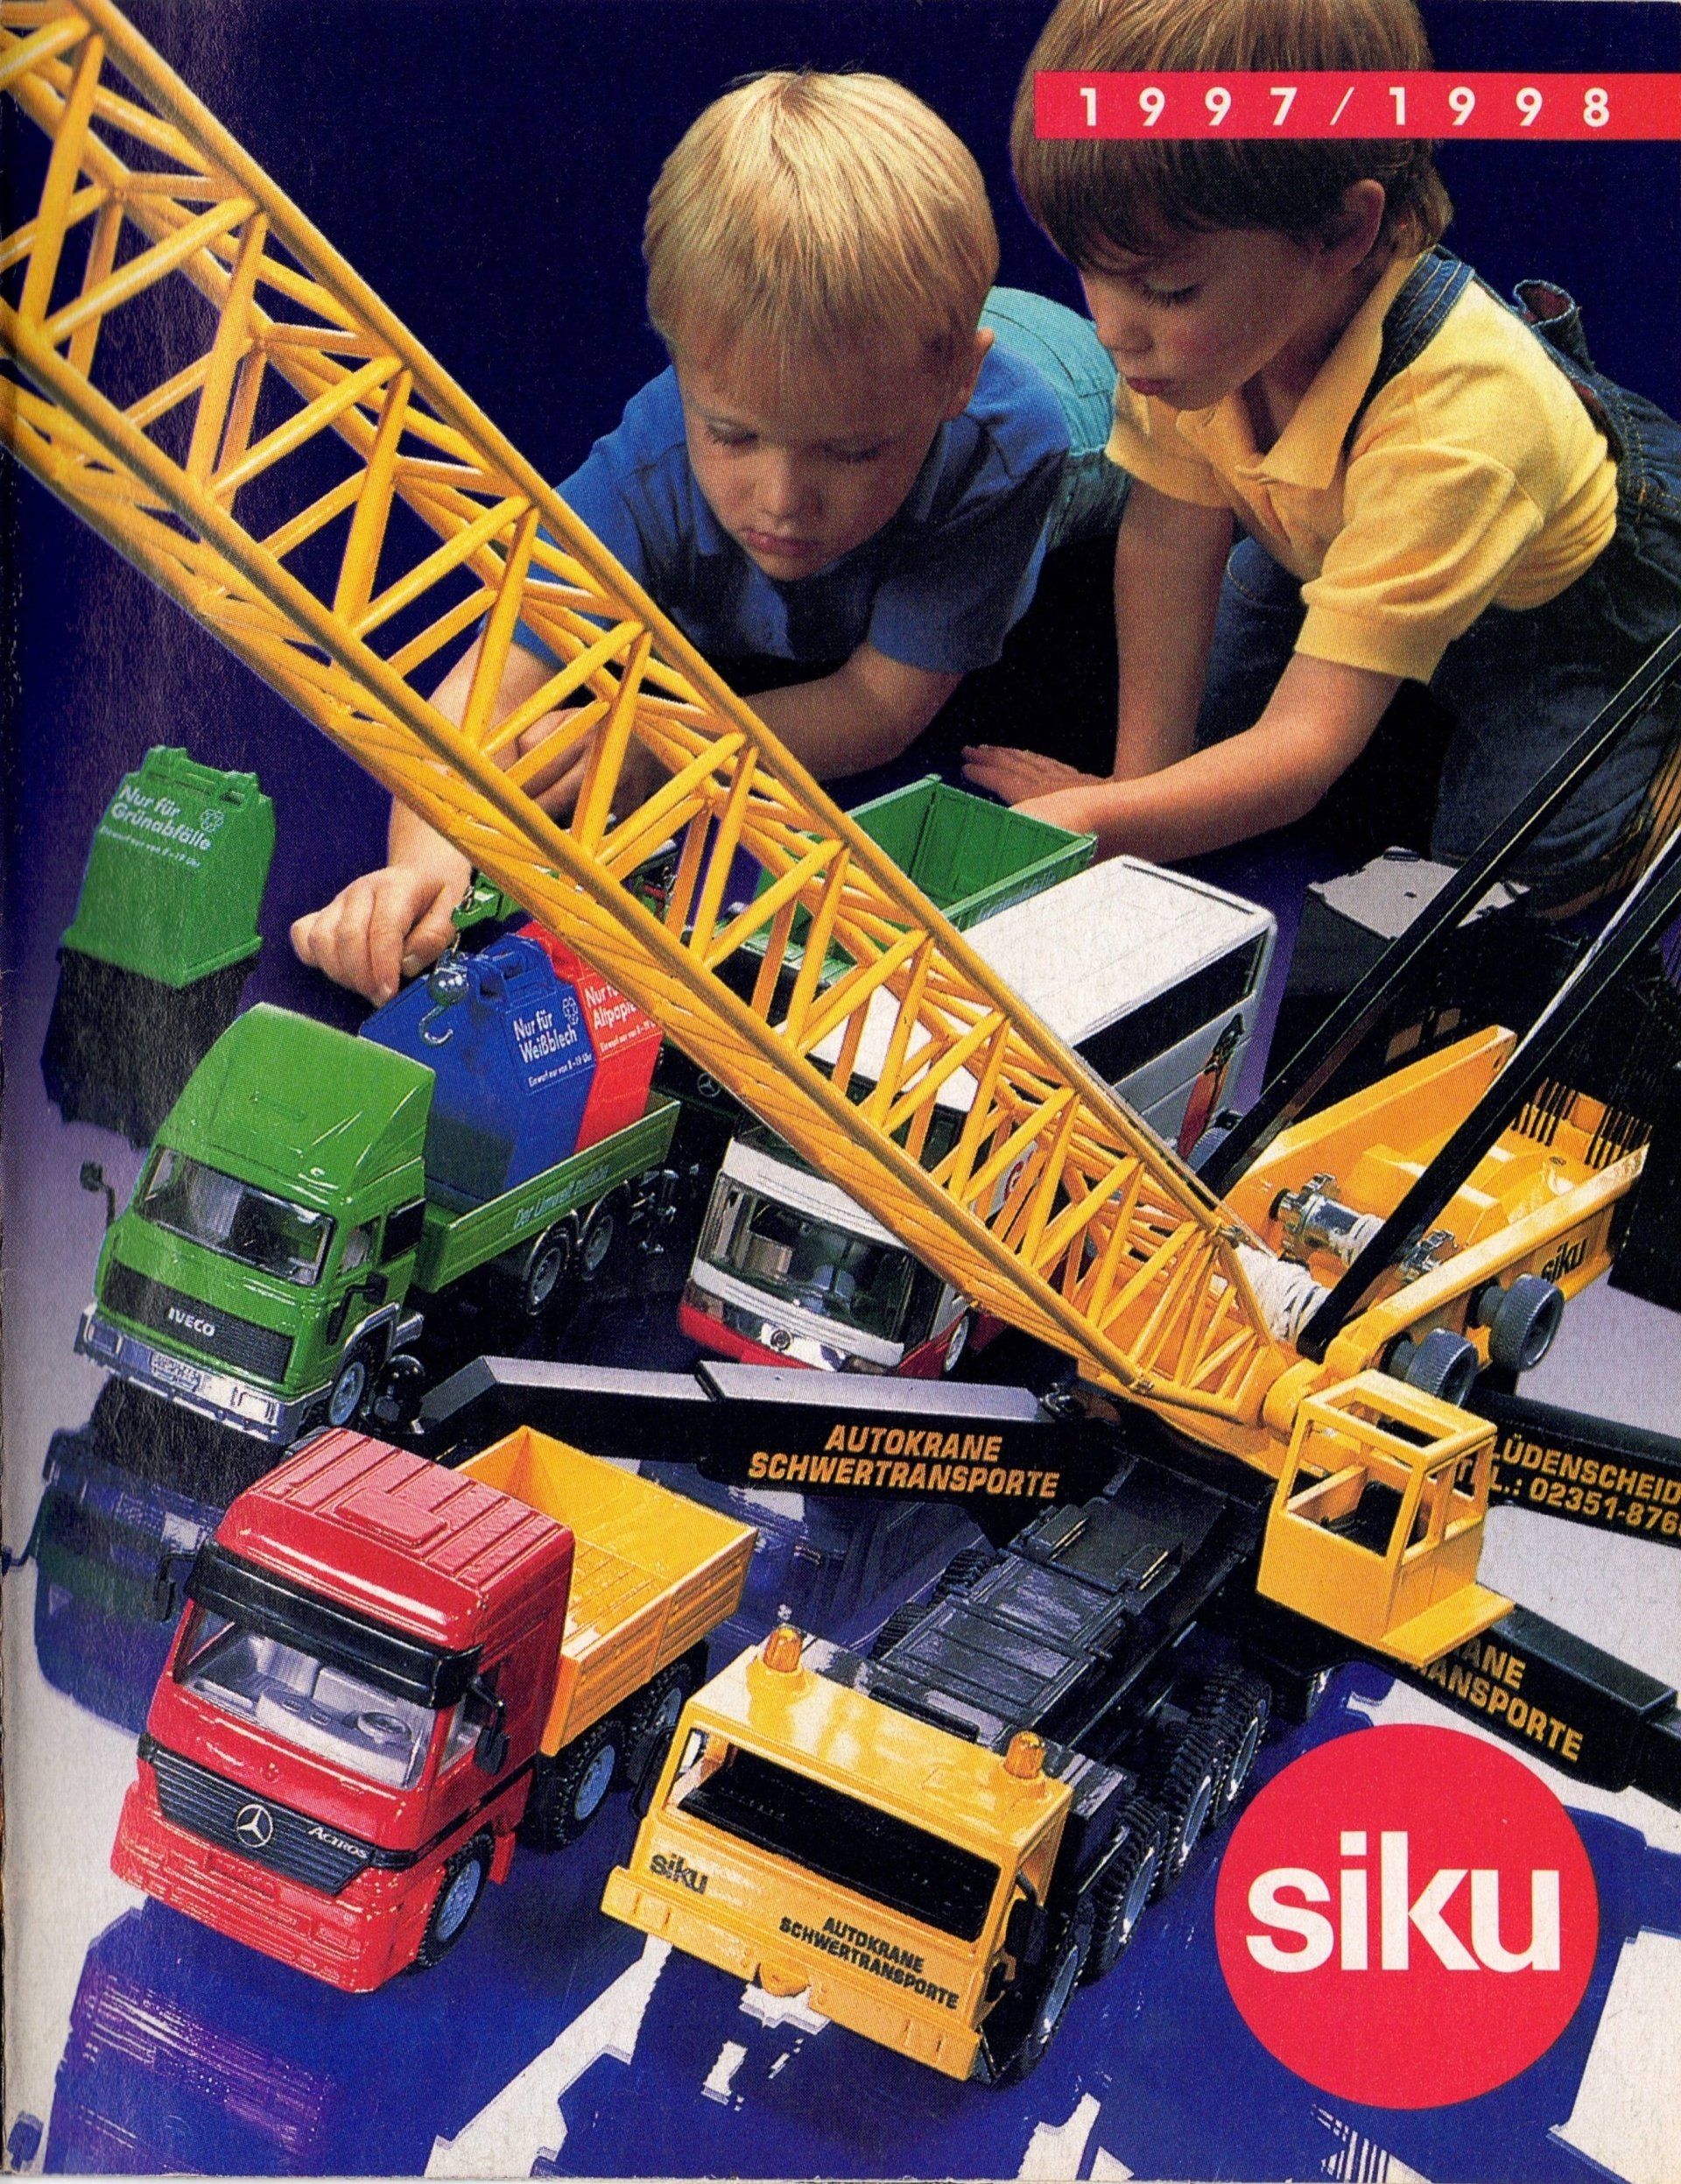 Siku Catalogue 1997-98